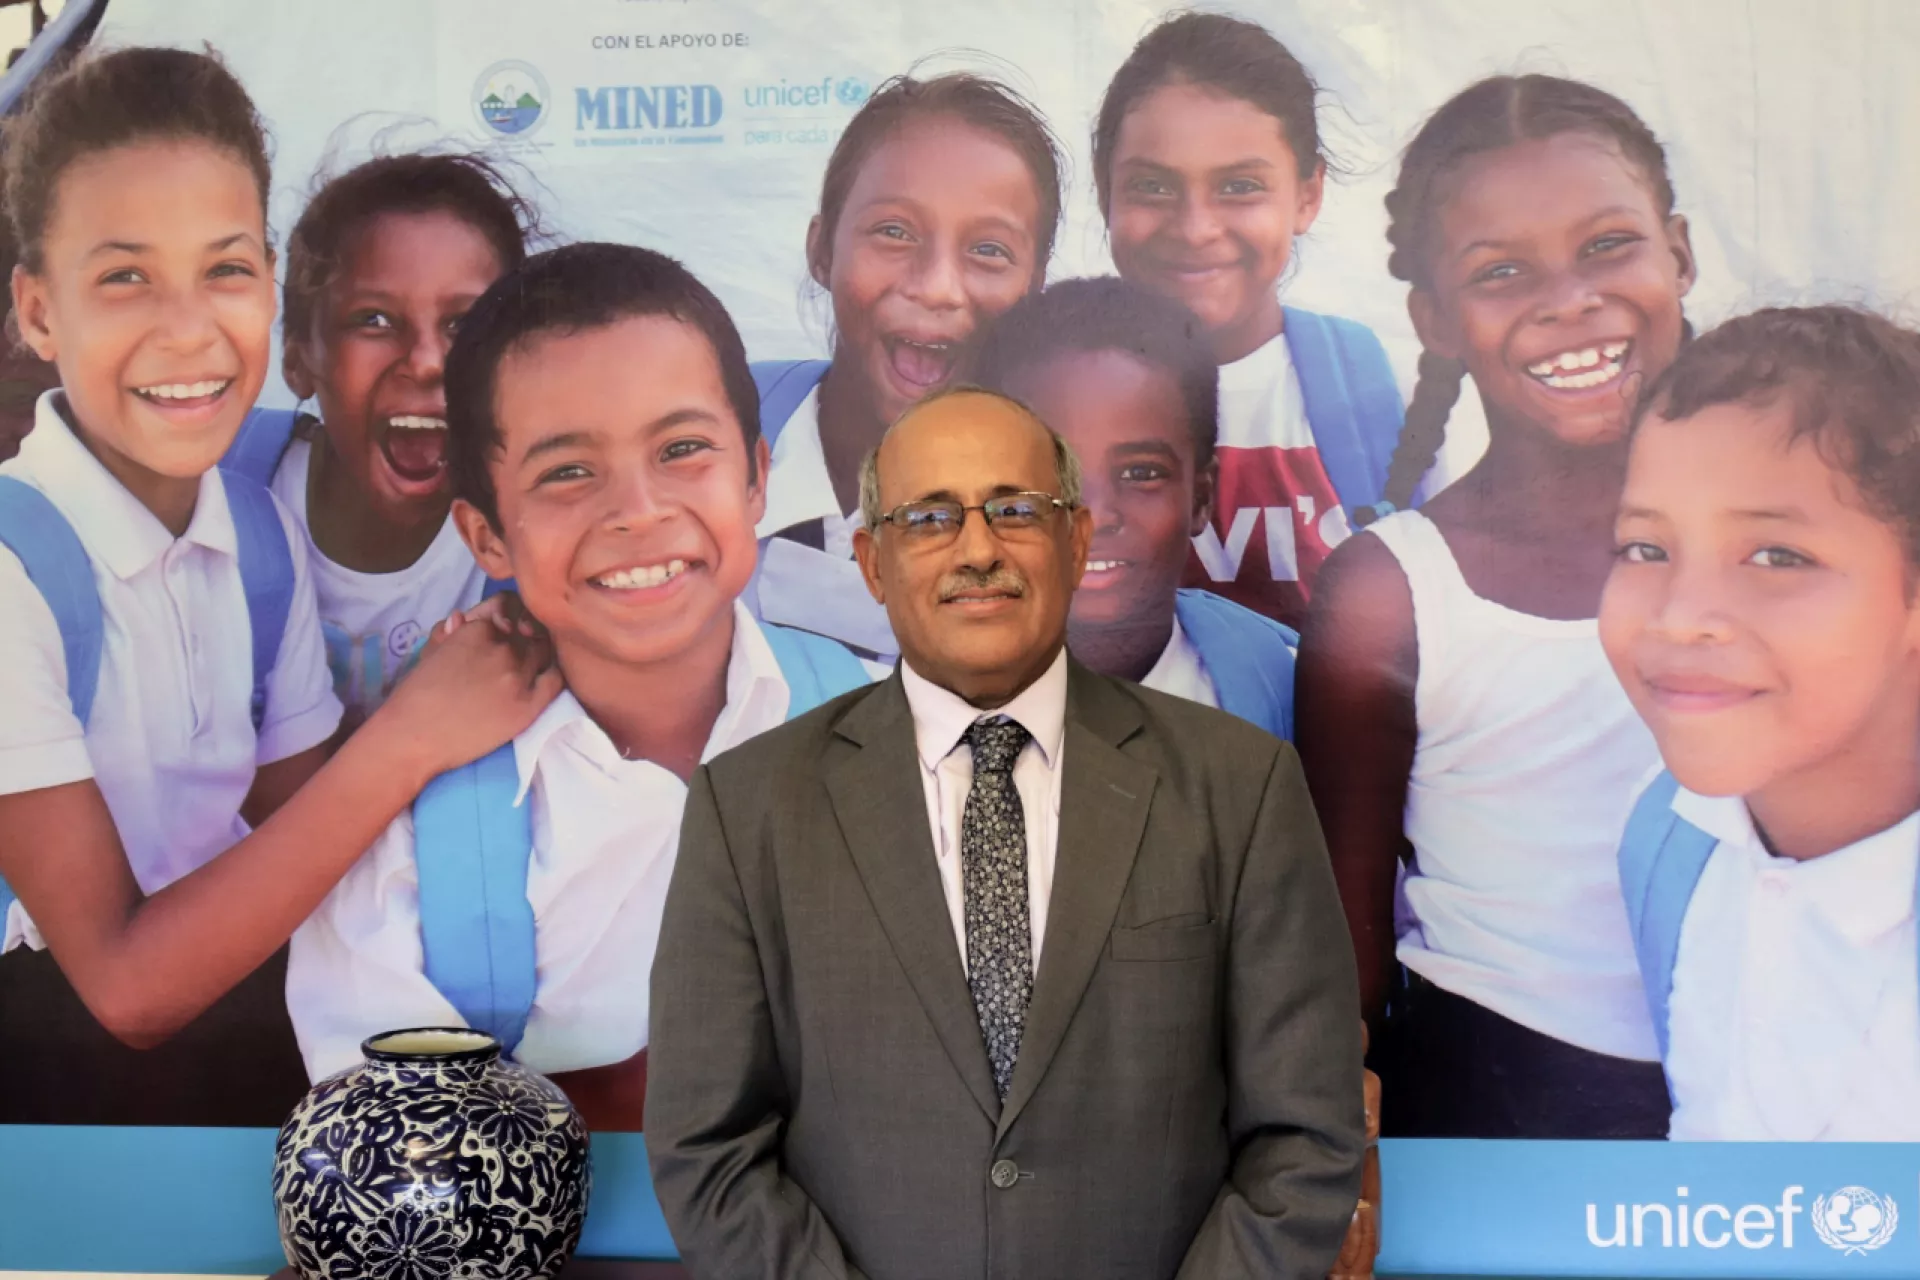 Foto mostra um homem de terno e gravata, olhando para a câmera e sorrindo. Atrás dele há um painel com crianças sorridentes e o logo do UNICEF.